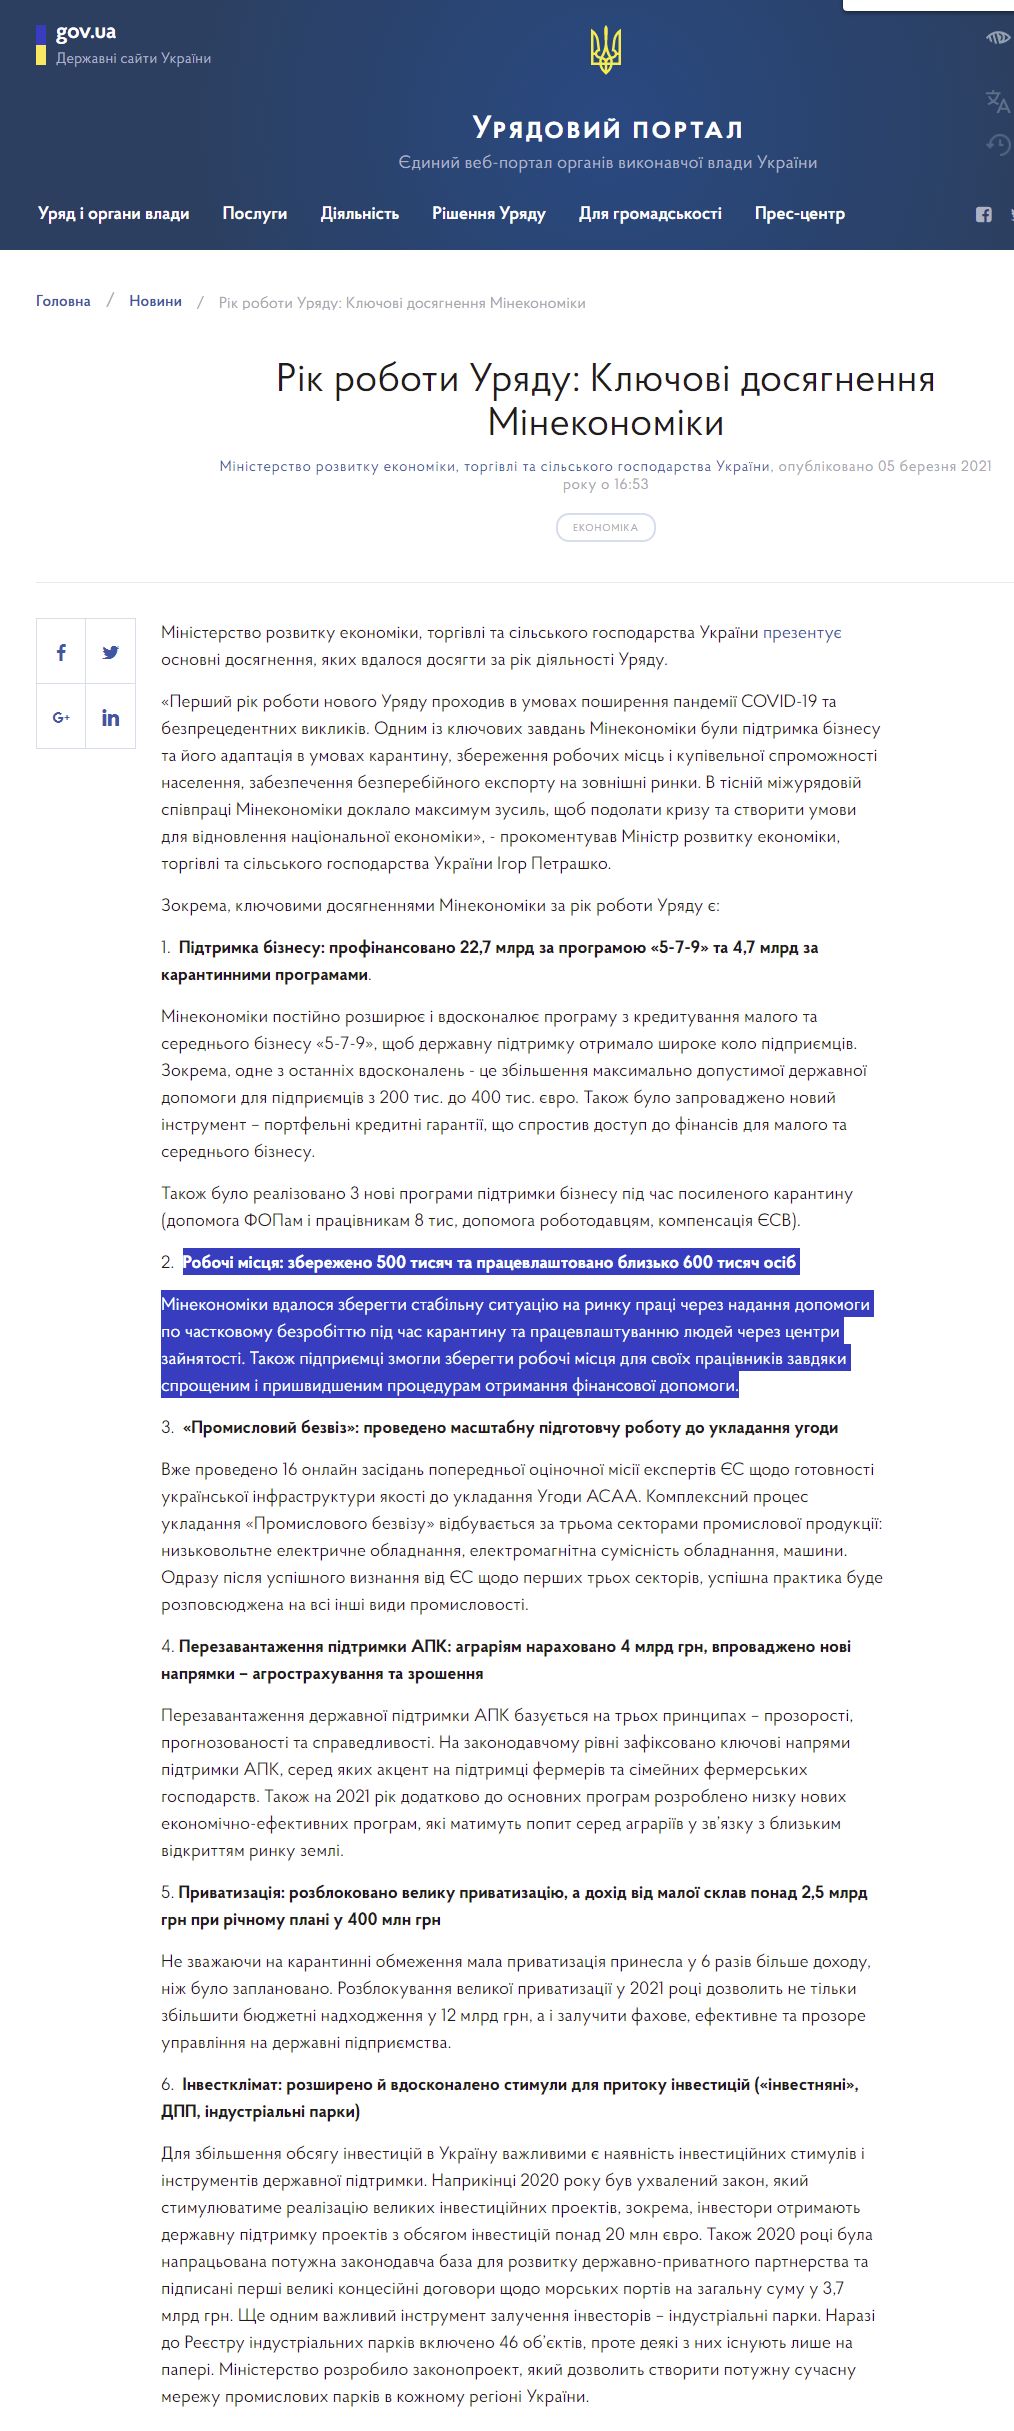 https://www.kmu.gov.ua/news/rik-roboti-uryadu-klyuchovi-dosyagnennya-minekonomiki